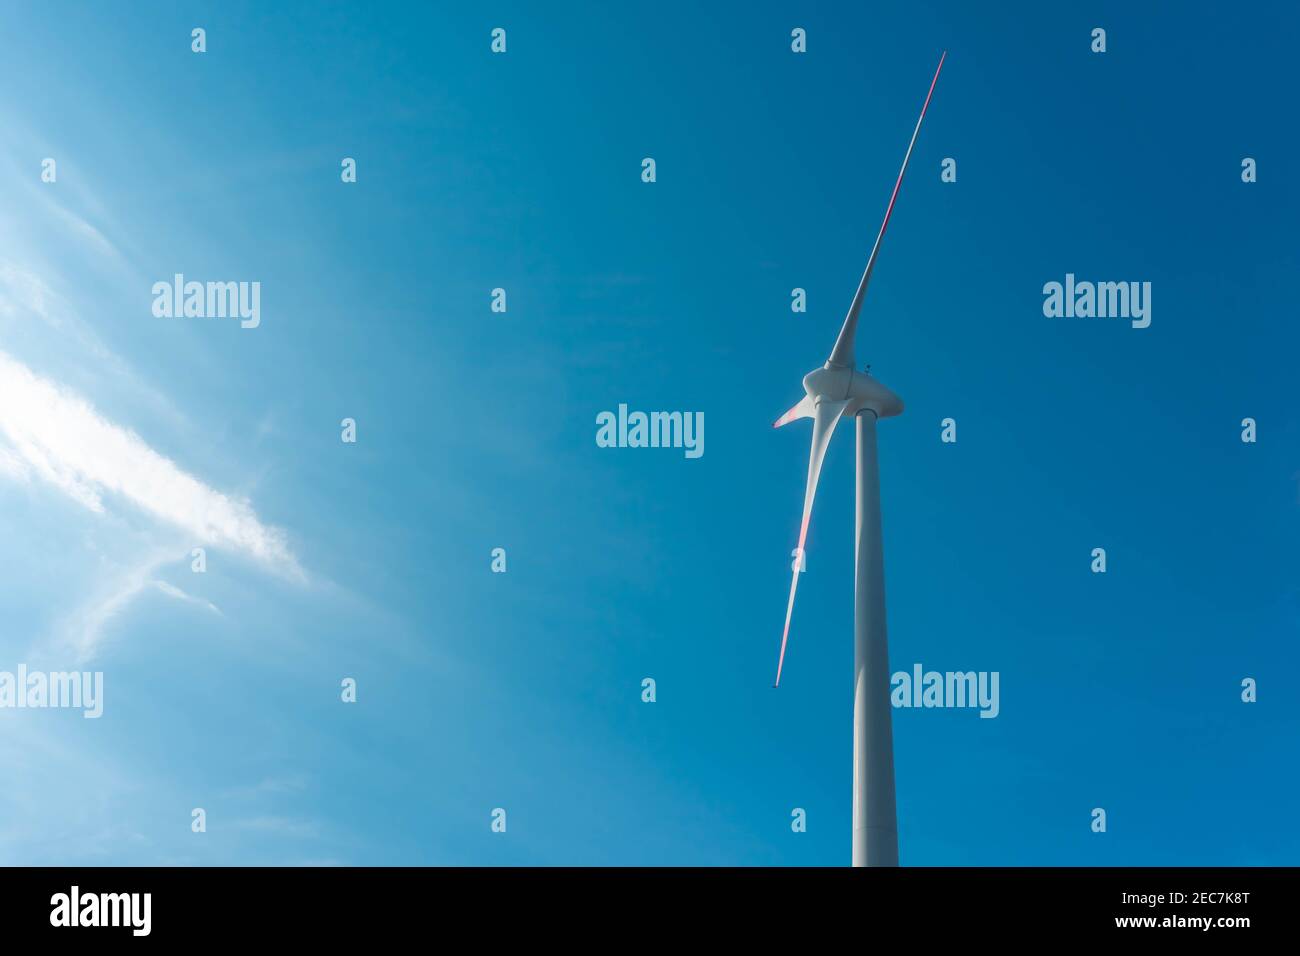 Windturbine auf blauem Himmel Hintergrund mit Sonneneinstrahlung. Konzept für saubere und erneuerbare Energien Stockfoto